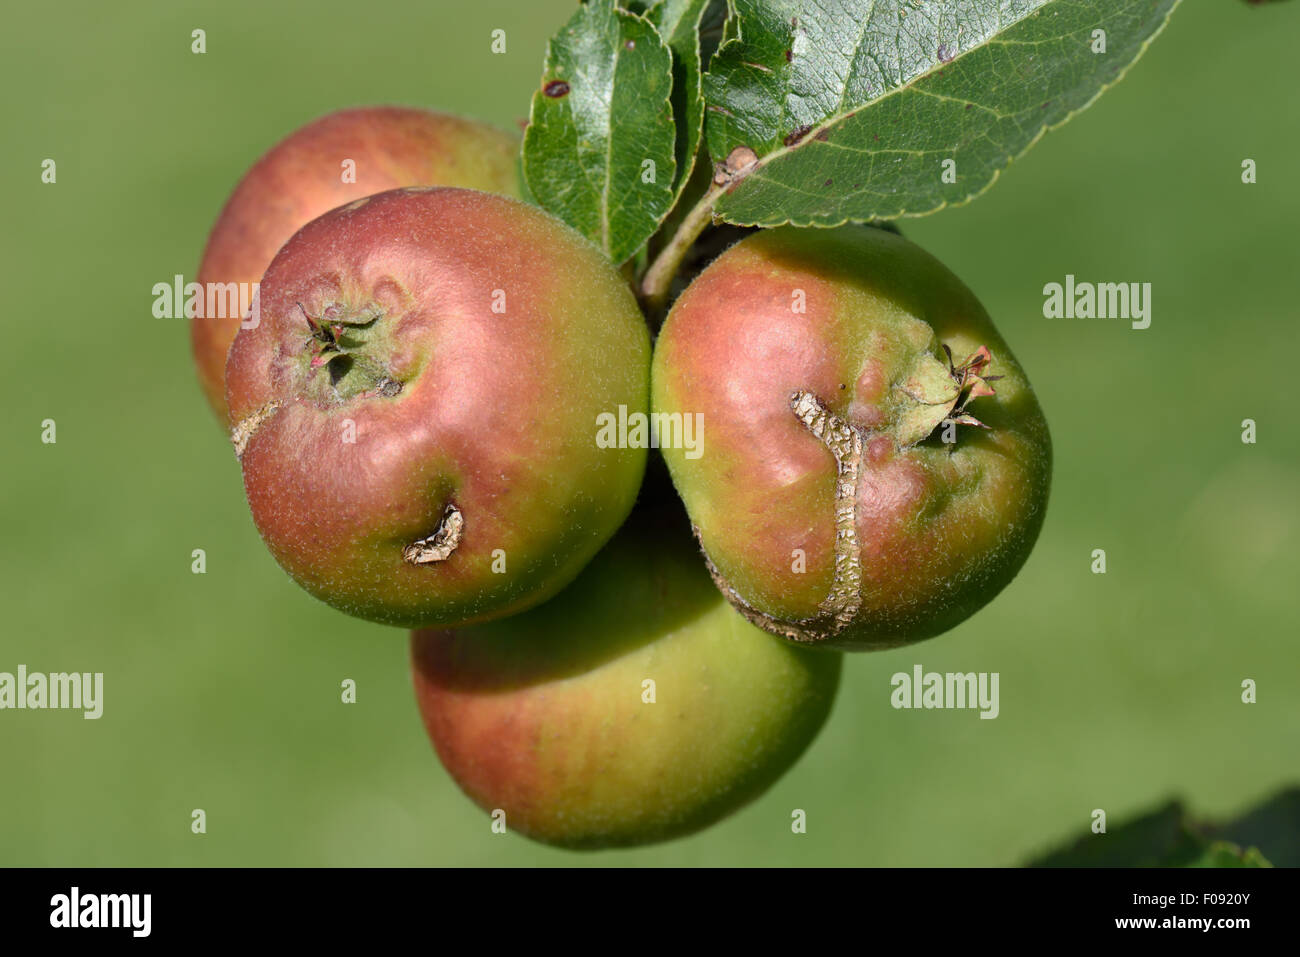 Cicatrici da danni causati da europeo apple sawfly, Holocampa testudinea, alimentazione di inizio in apple lo sviluppo del frutto. Foto Stock